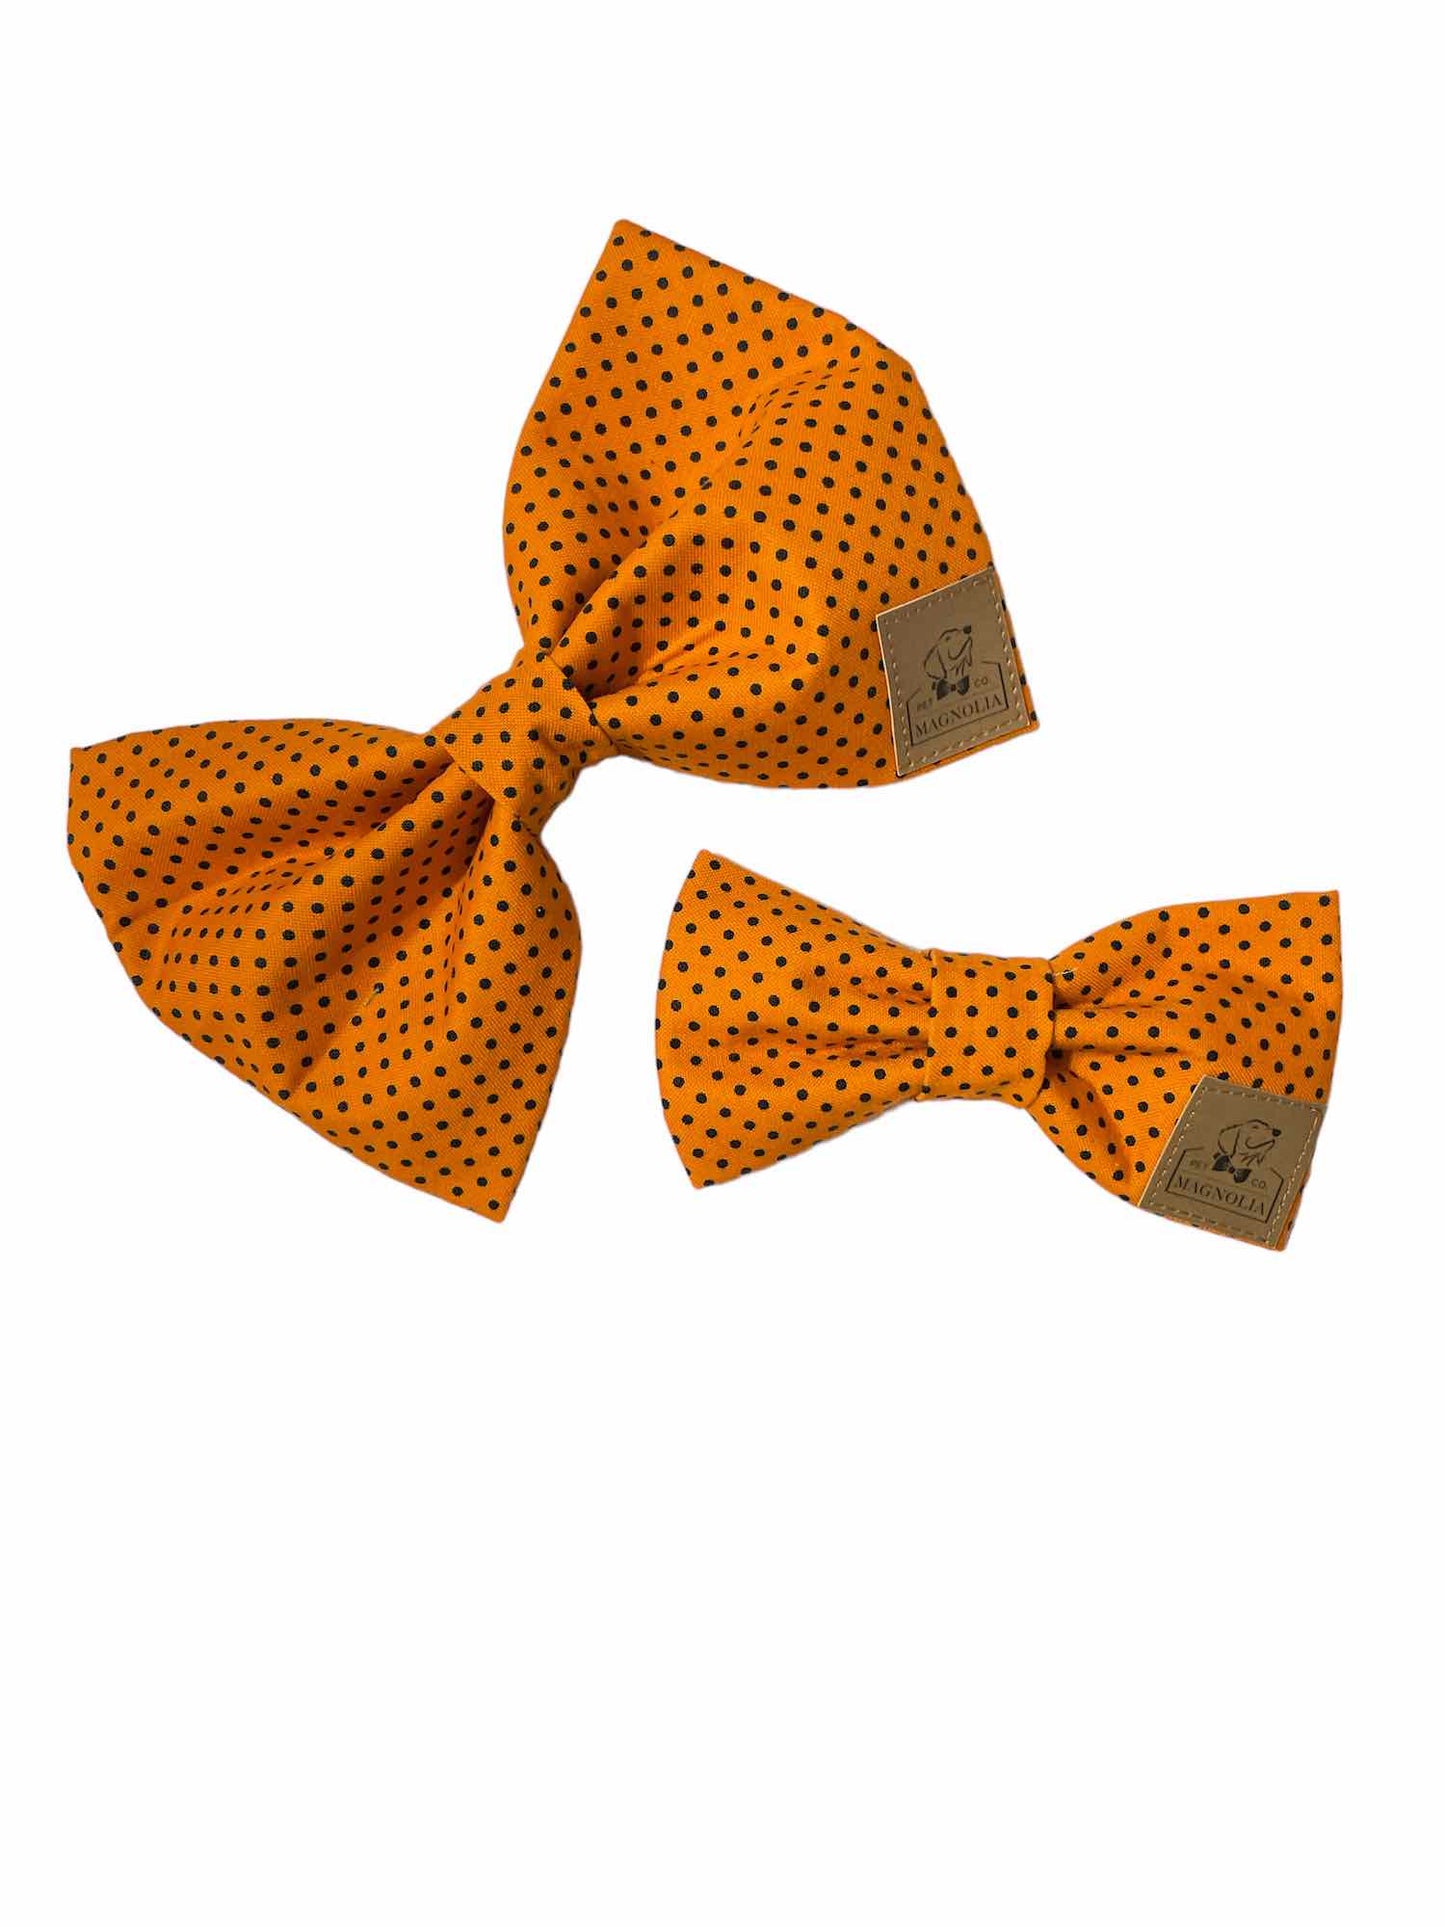 Orange with Black Polkadot Bow Tie